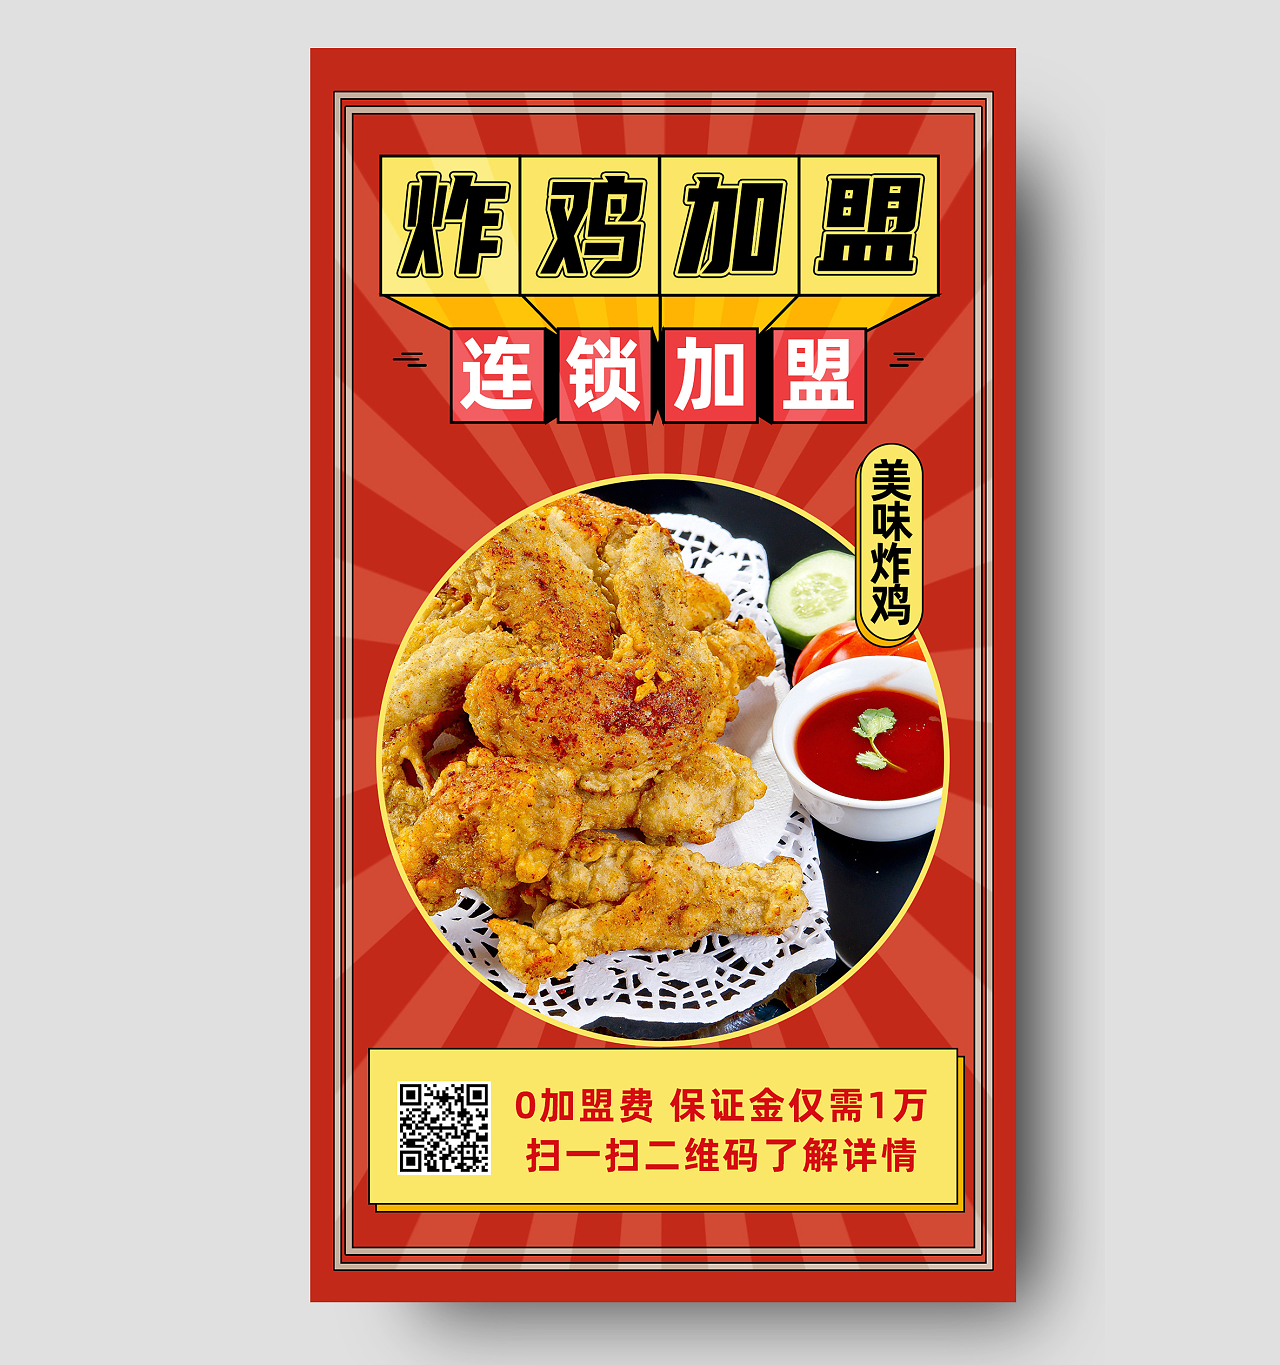 红色简约炸鸡加盟连锁加盟餐饮招商手机海报